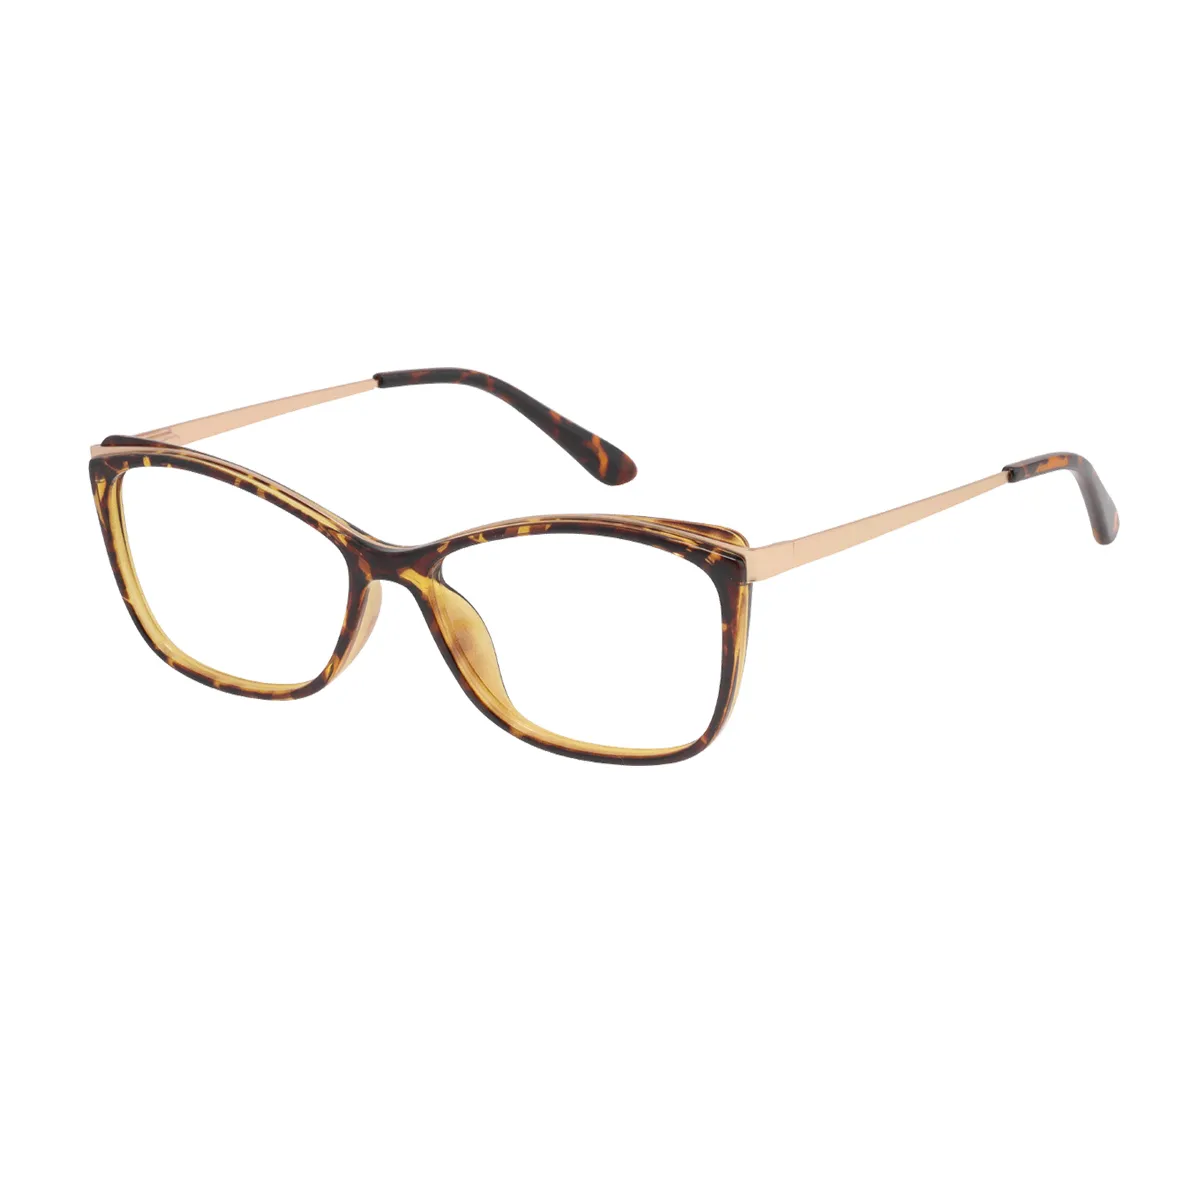 Avice - Cat-eye Tortoiseshell Glasses for Women - EFE